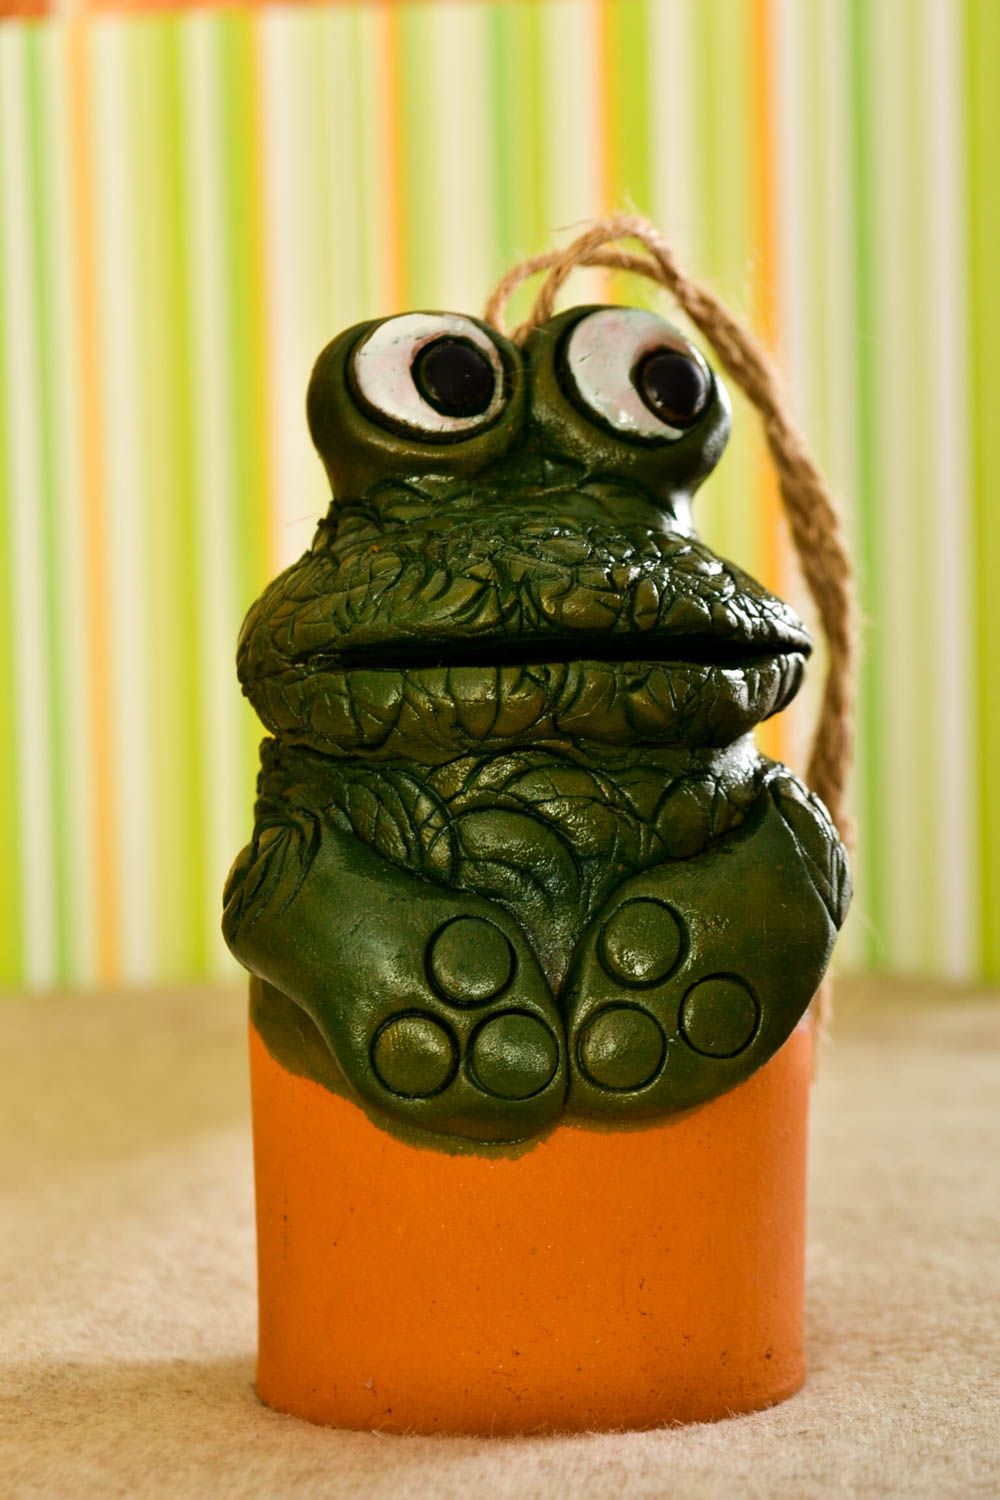 Колокольчик из глины лягушка ручной работы глиняный сувенир колокольчик подарок фото 1